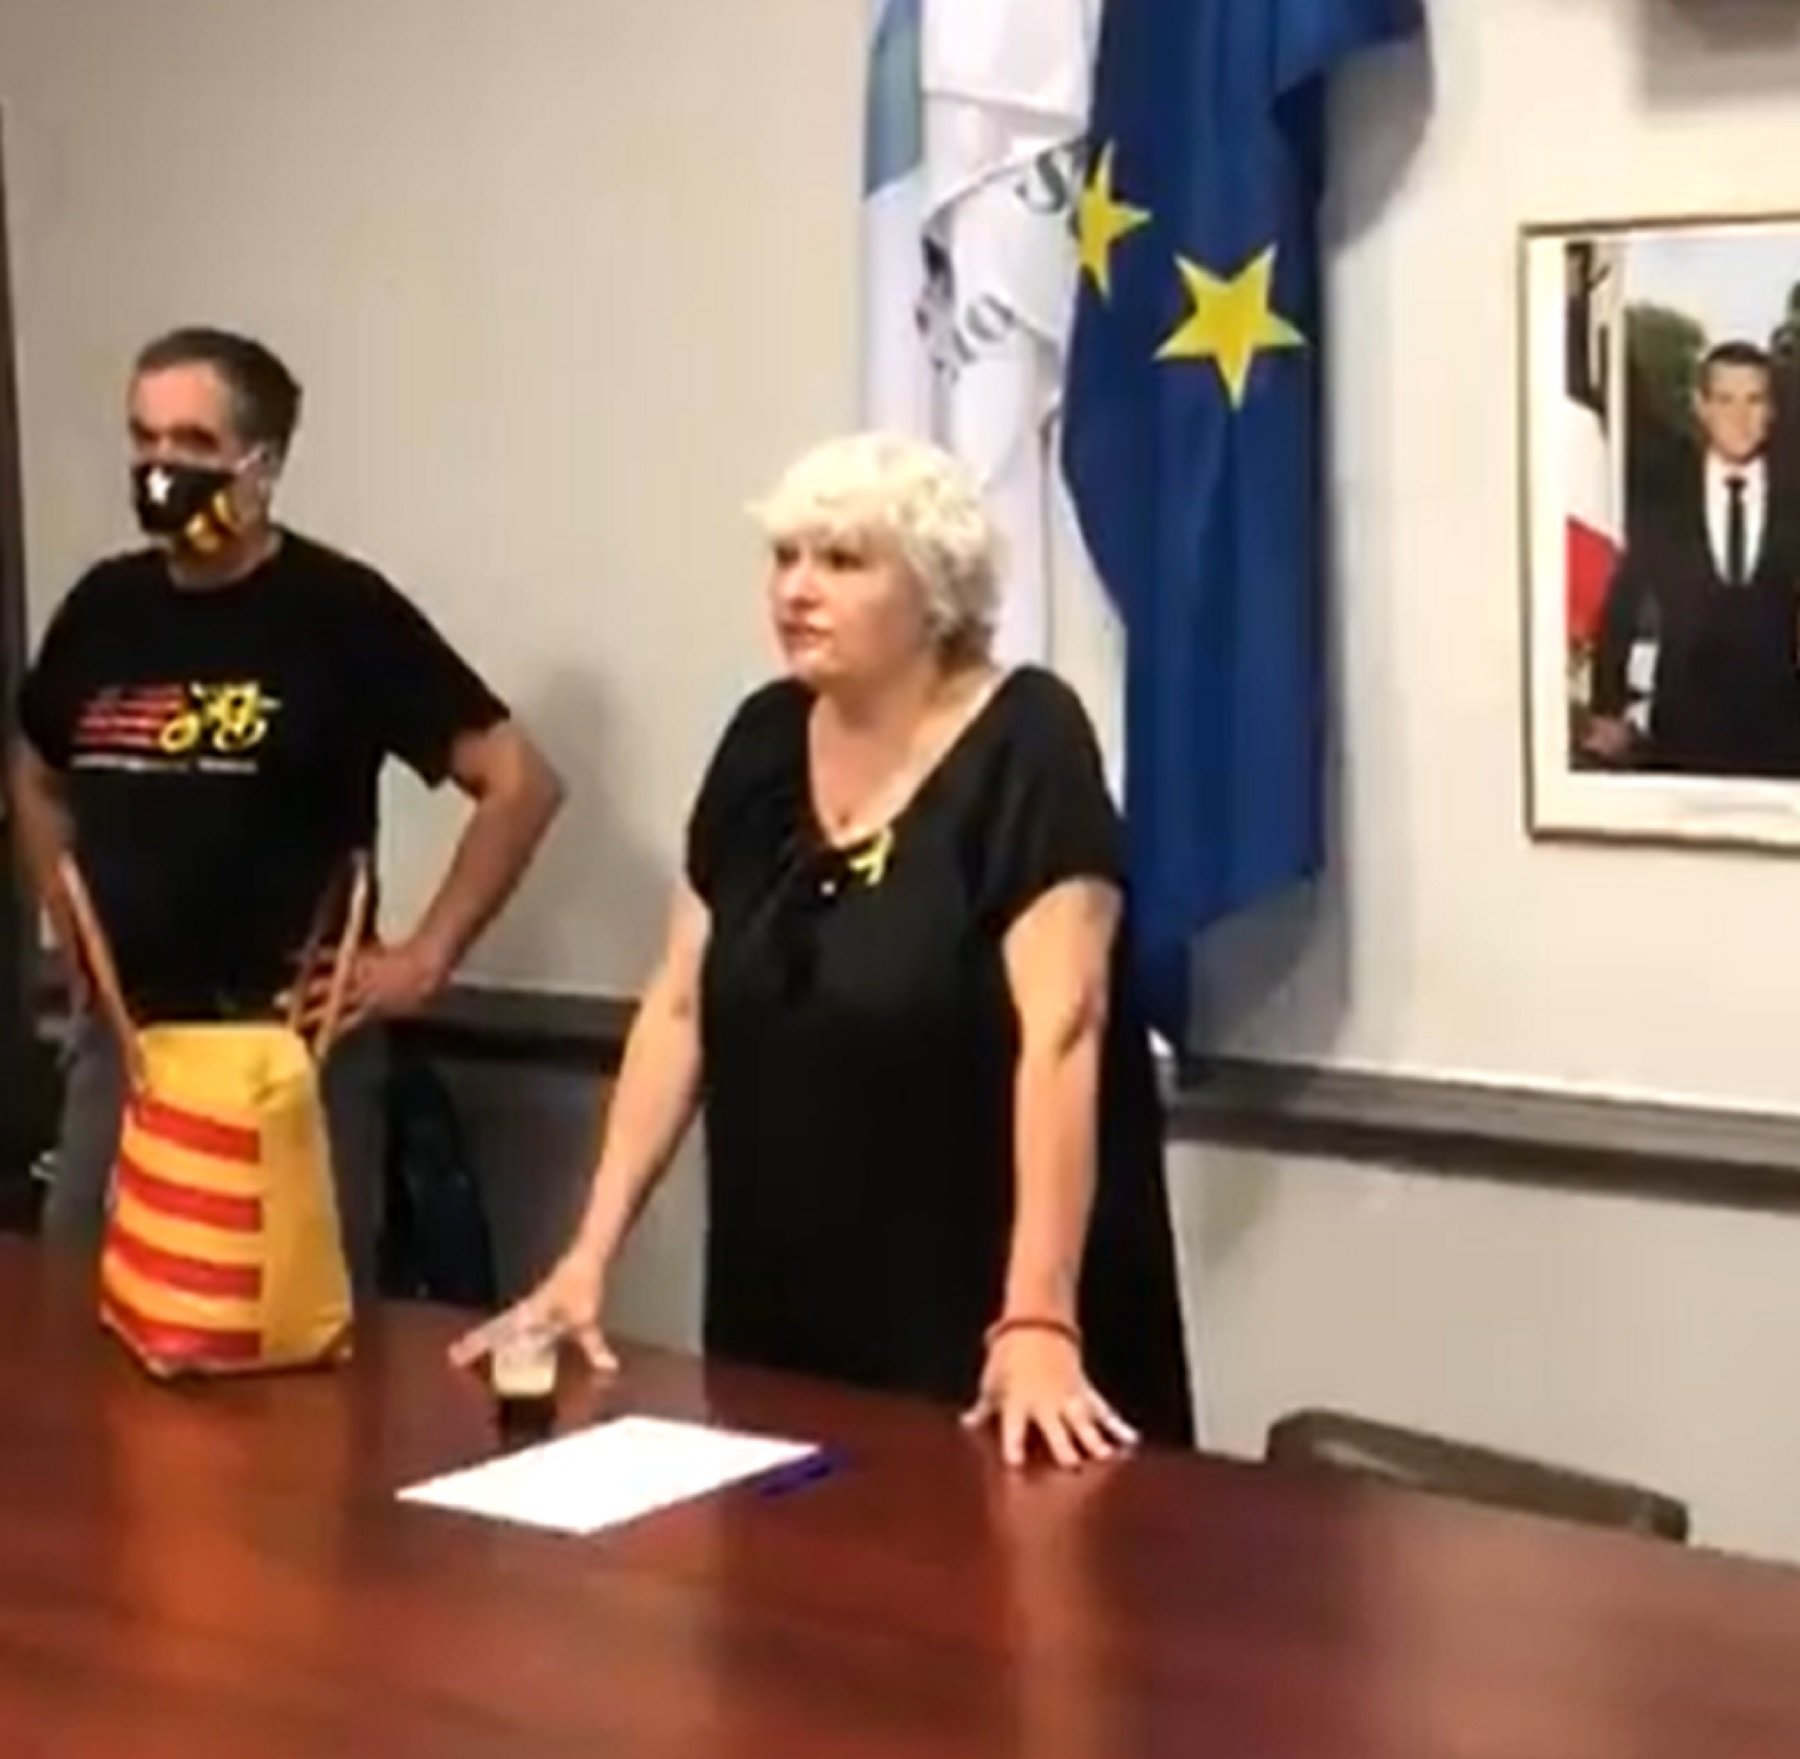 Vigoroso alegato de una alcadessa norcatalana: "España no es una democracia"